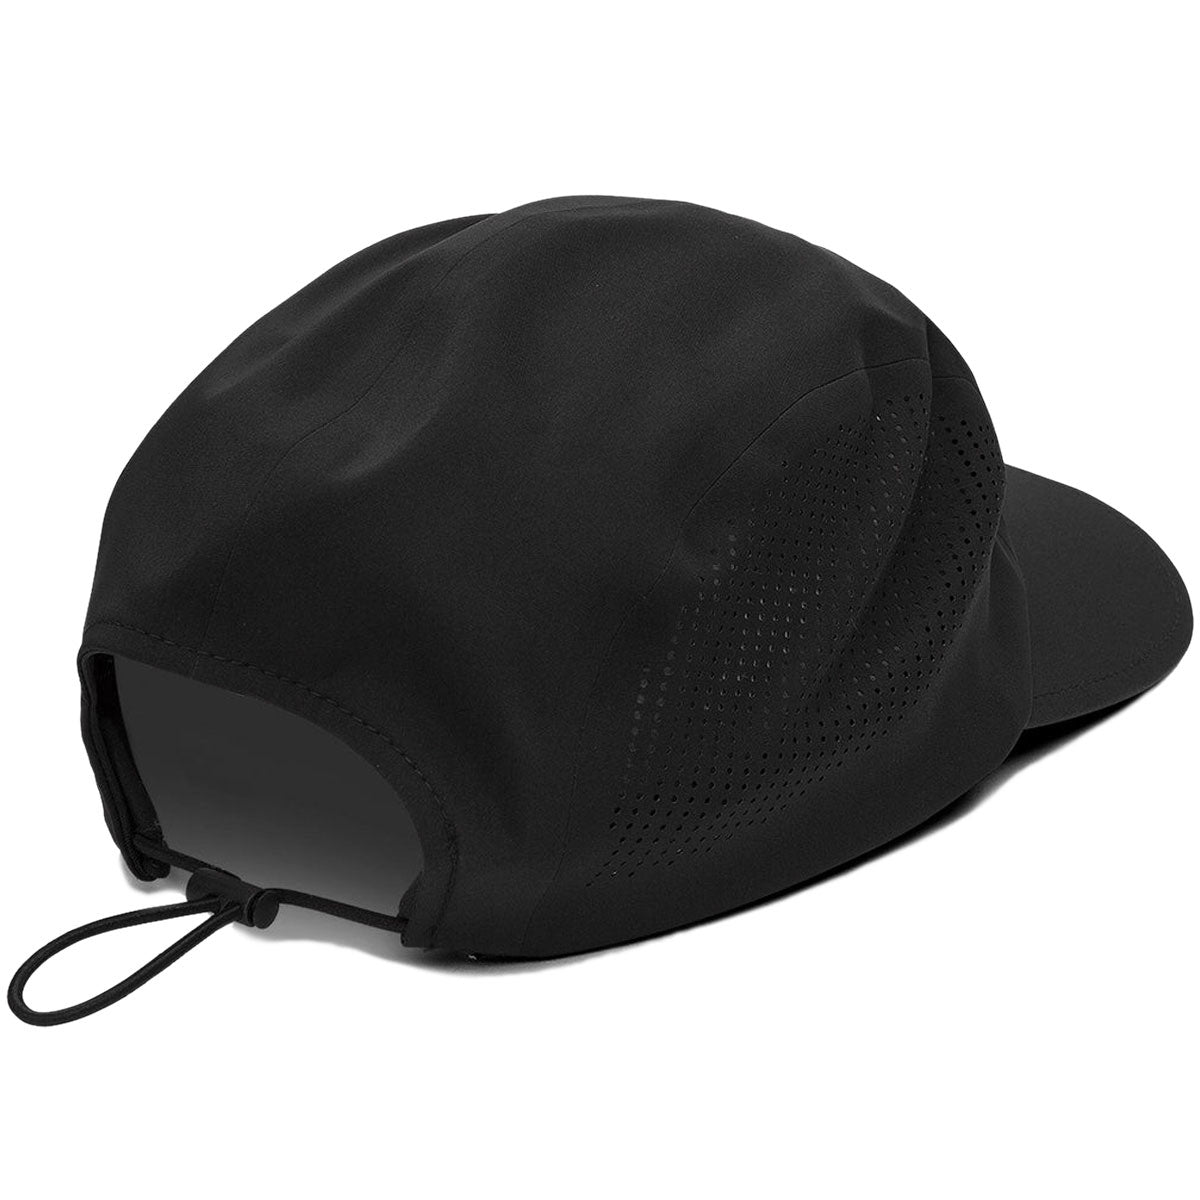 Volcom Stone Tech Delta Camper Adjustable Hat - Black image 2